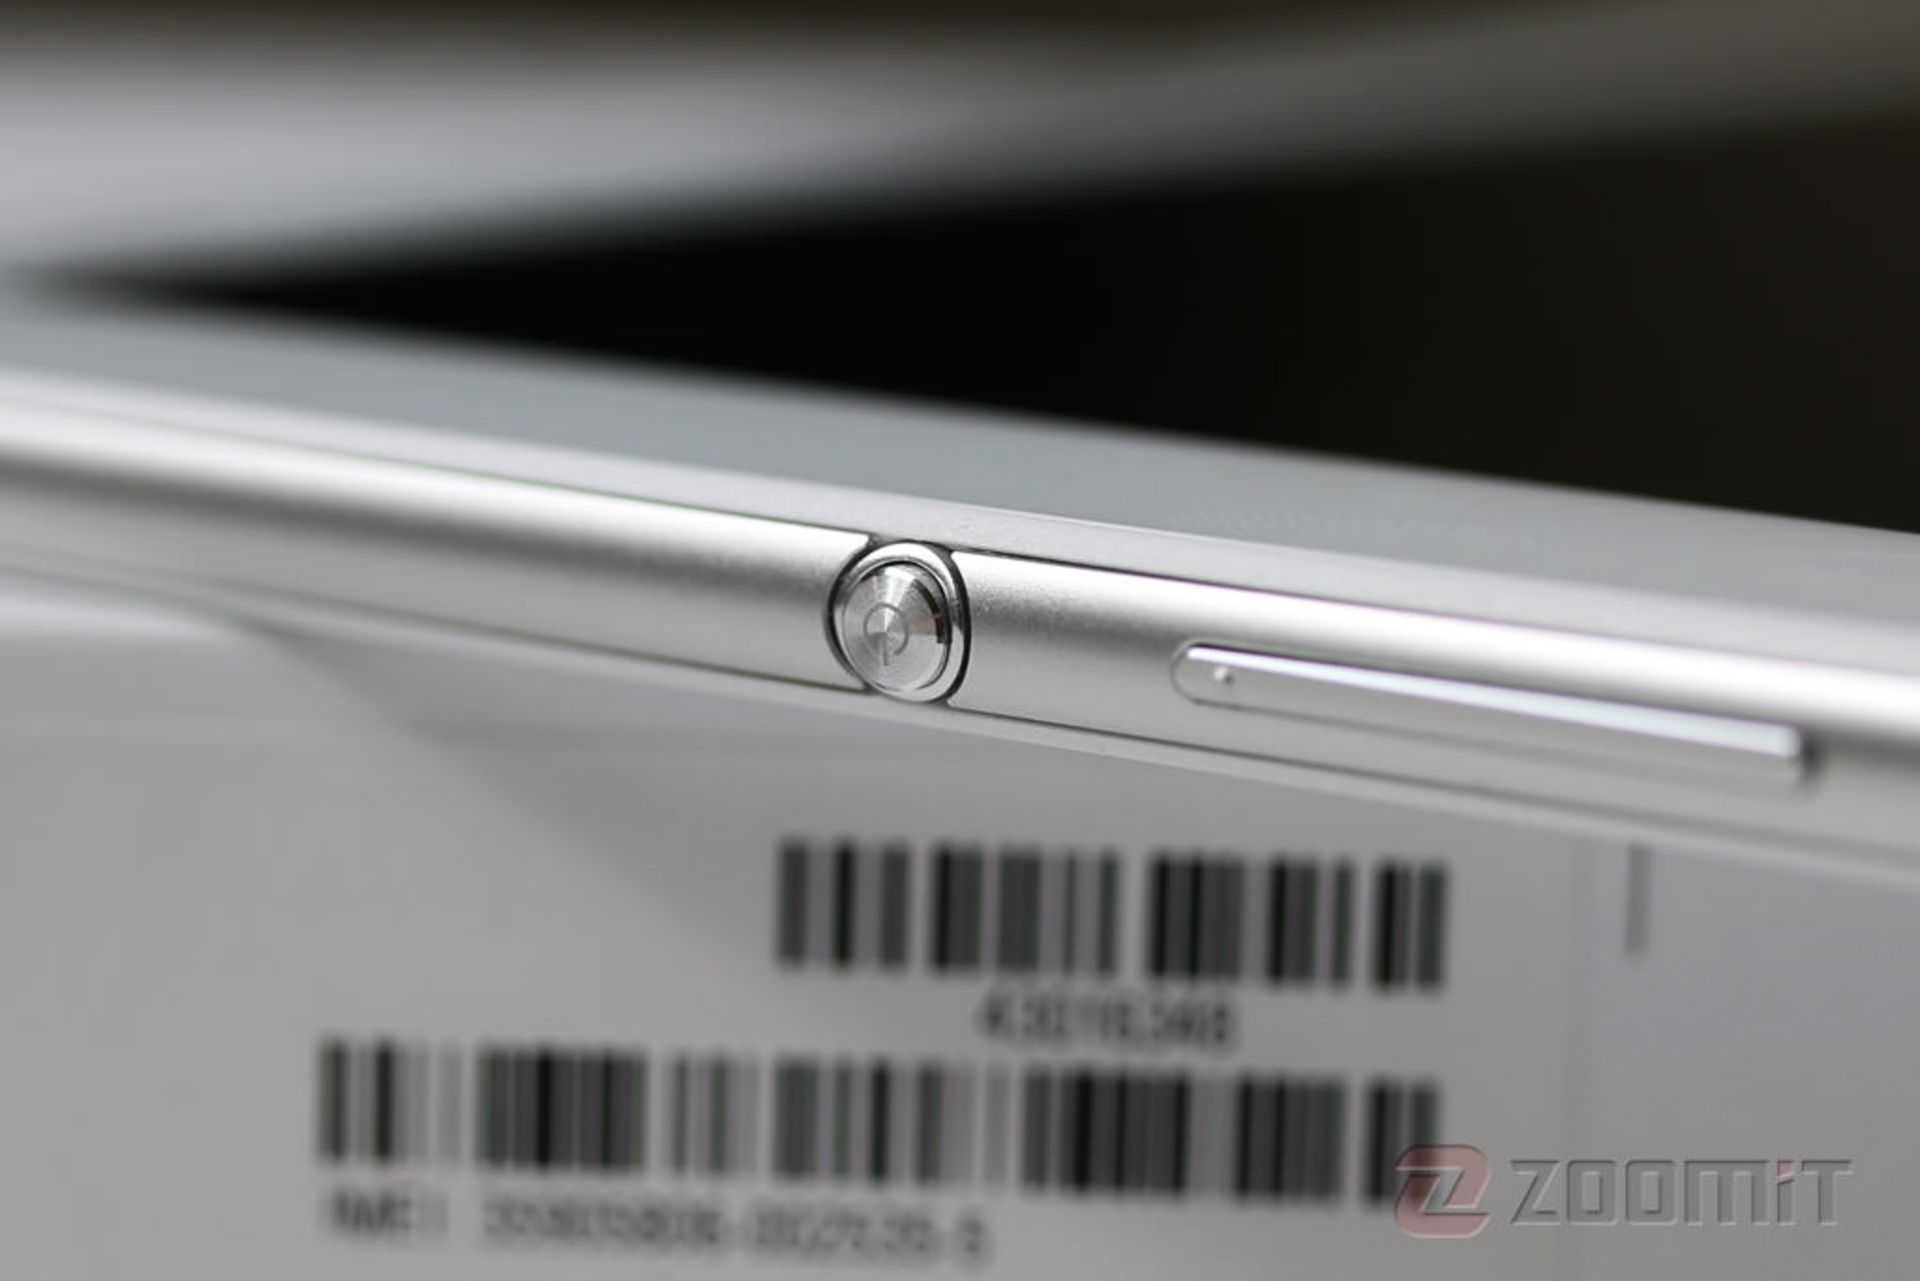 مرجع متخصصين ايران Xperia Z4 Tablet 19